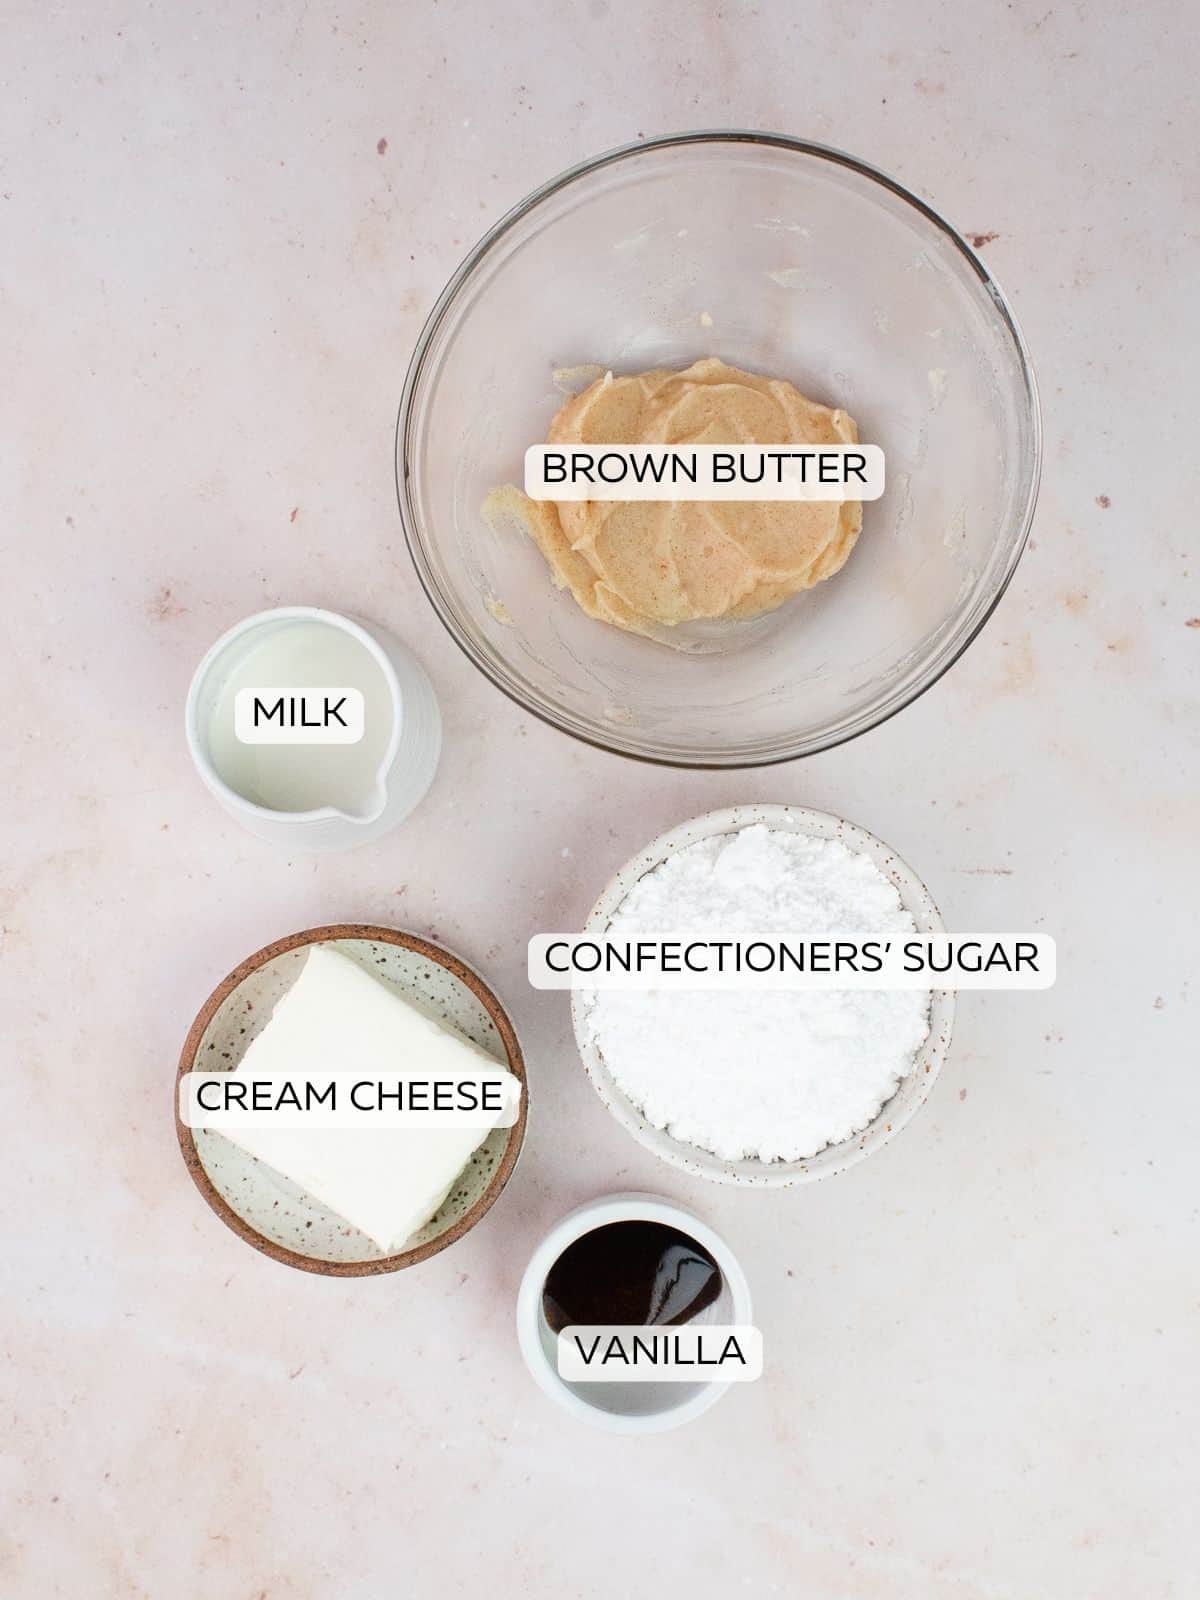 Brown butter glaze ingredients